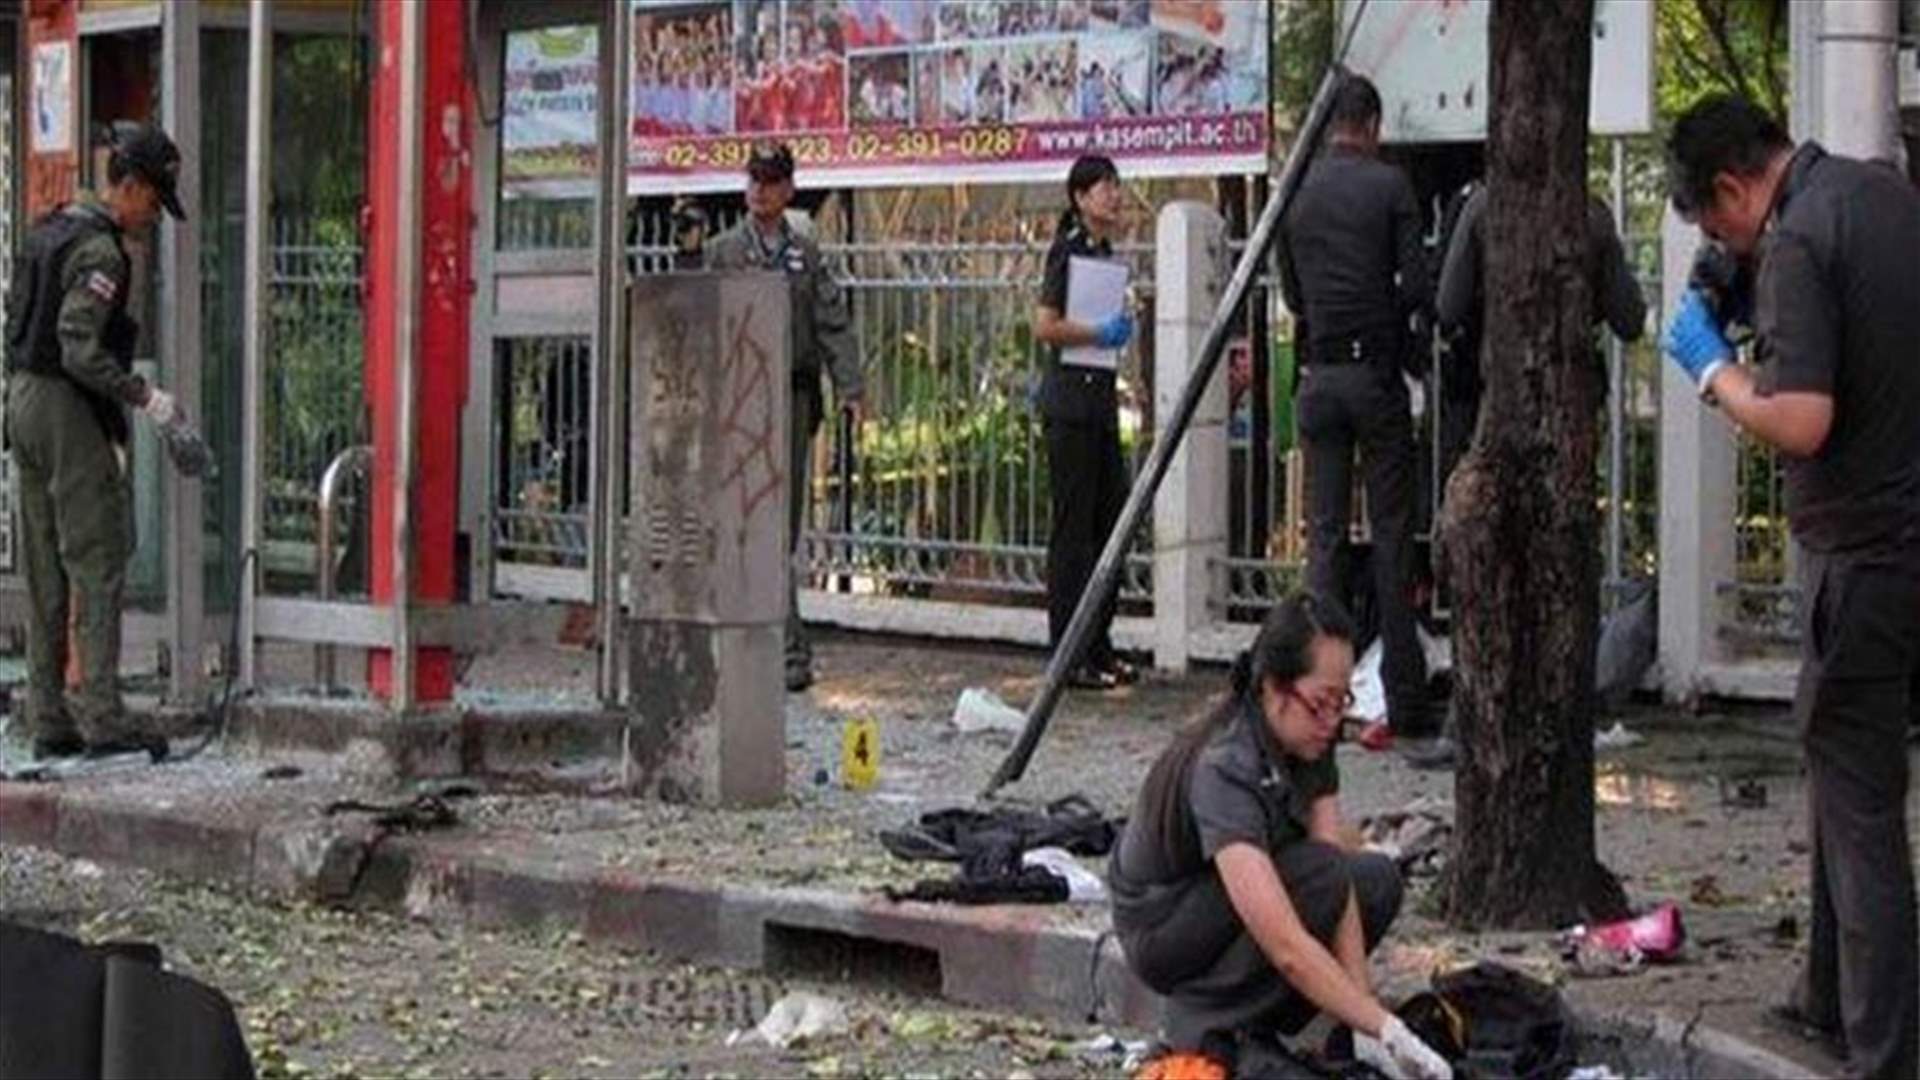 شرطة تايلاند تبحث عن مشتبه بهم آخرين في تفجير بانكوك